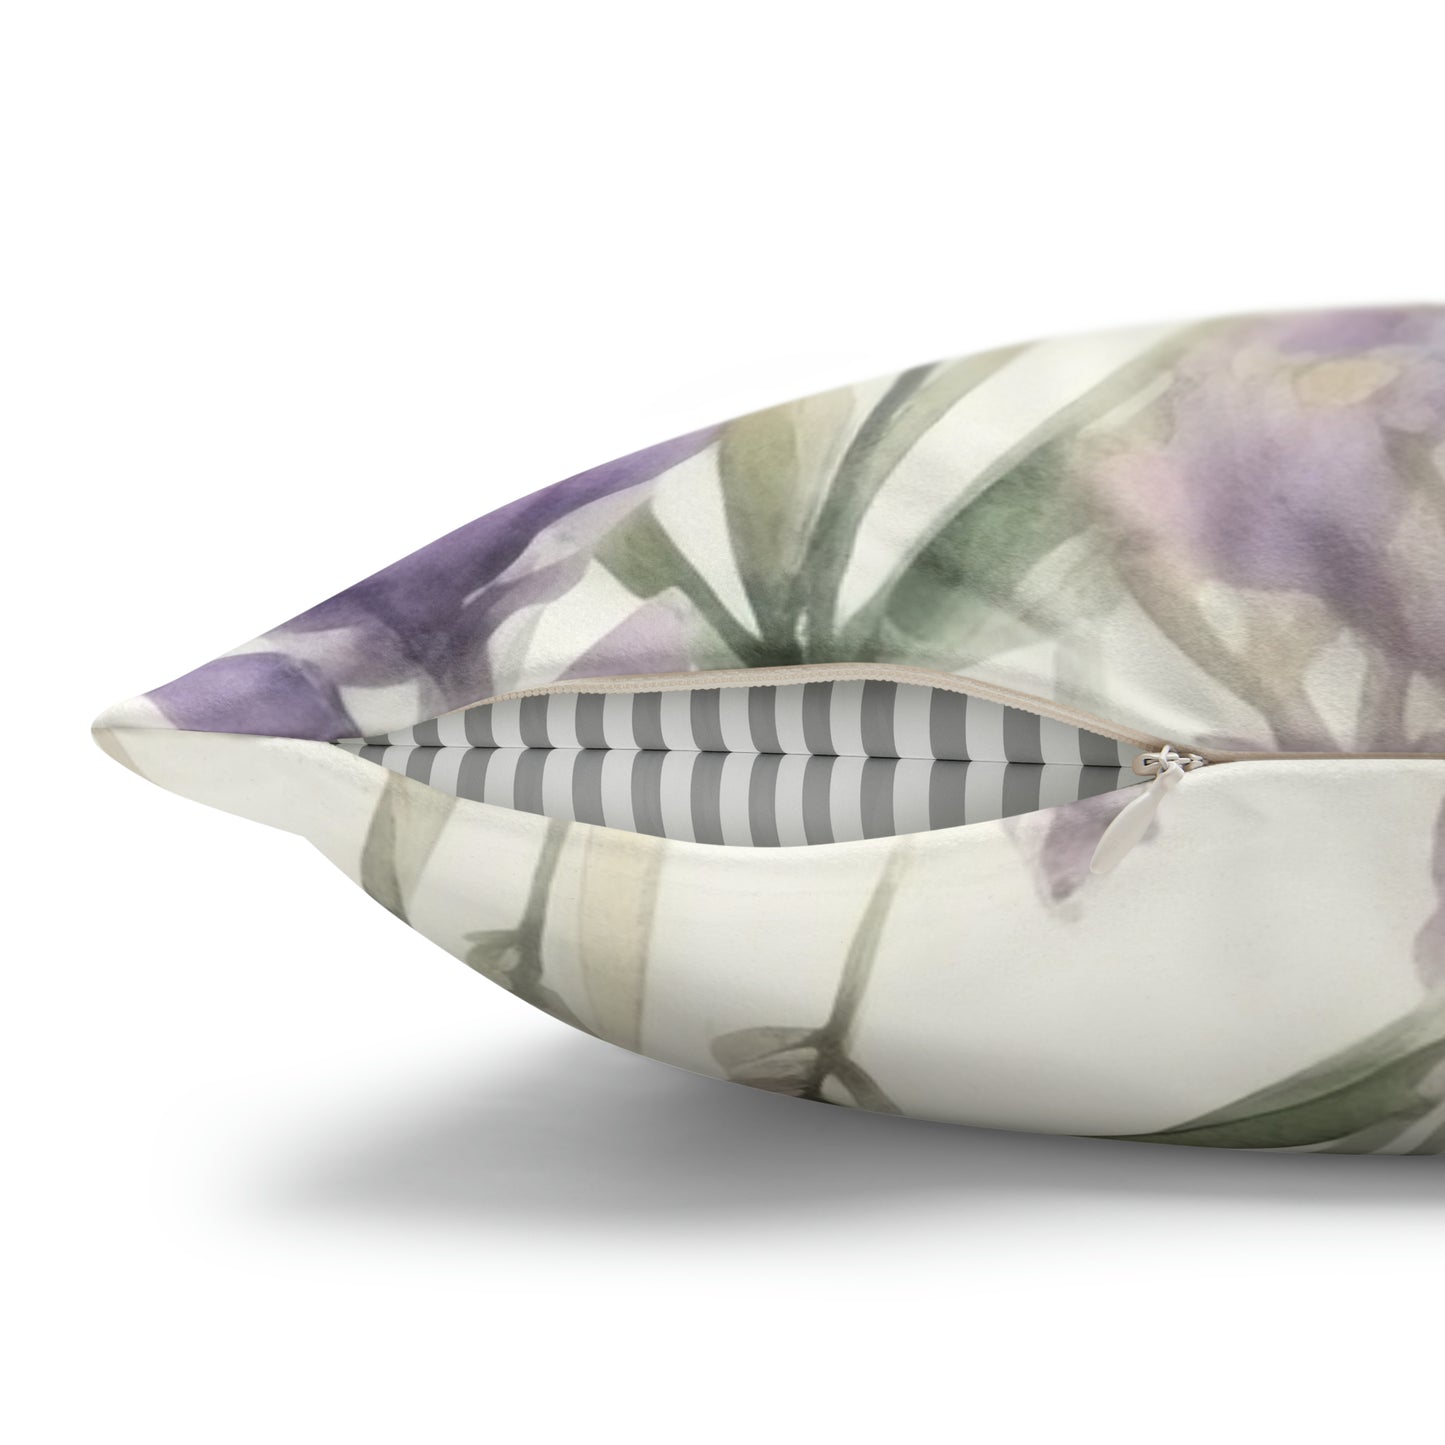 Lavender Watercolor Pillow Case